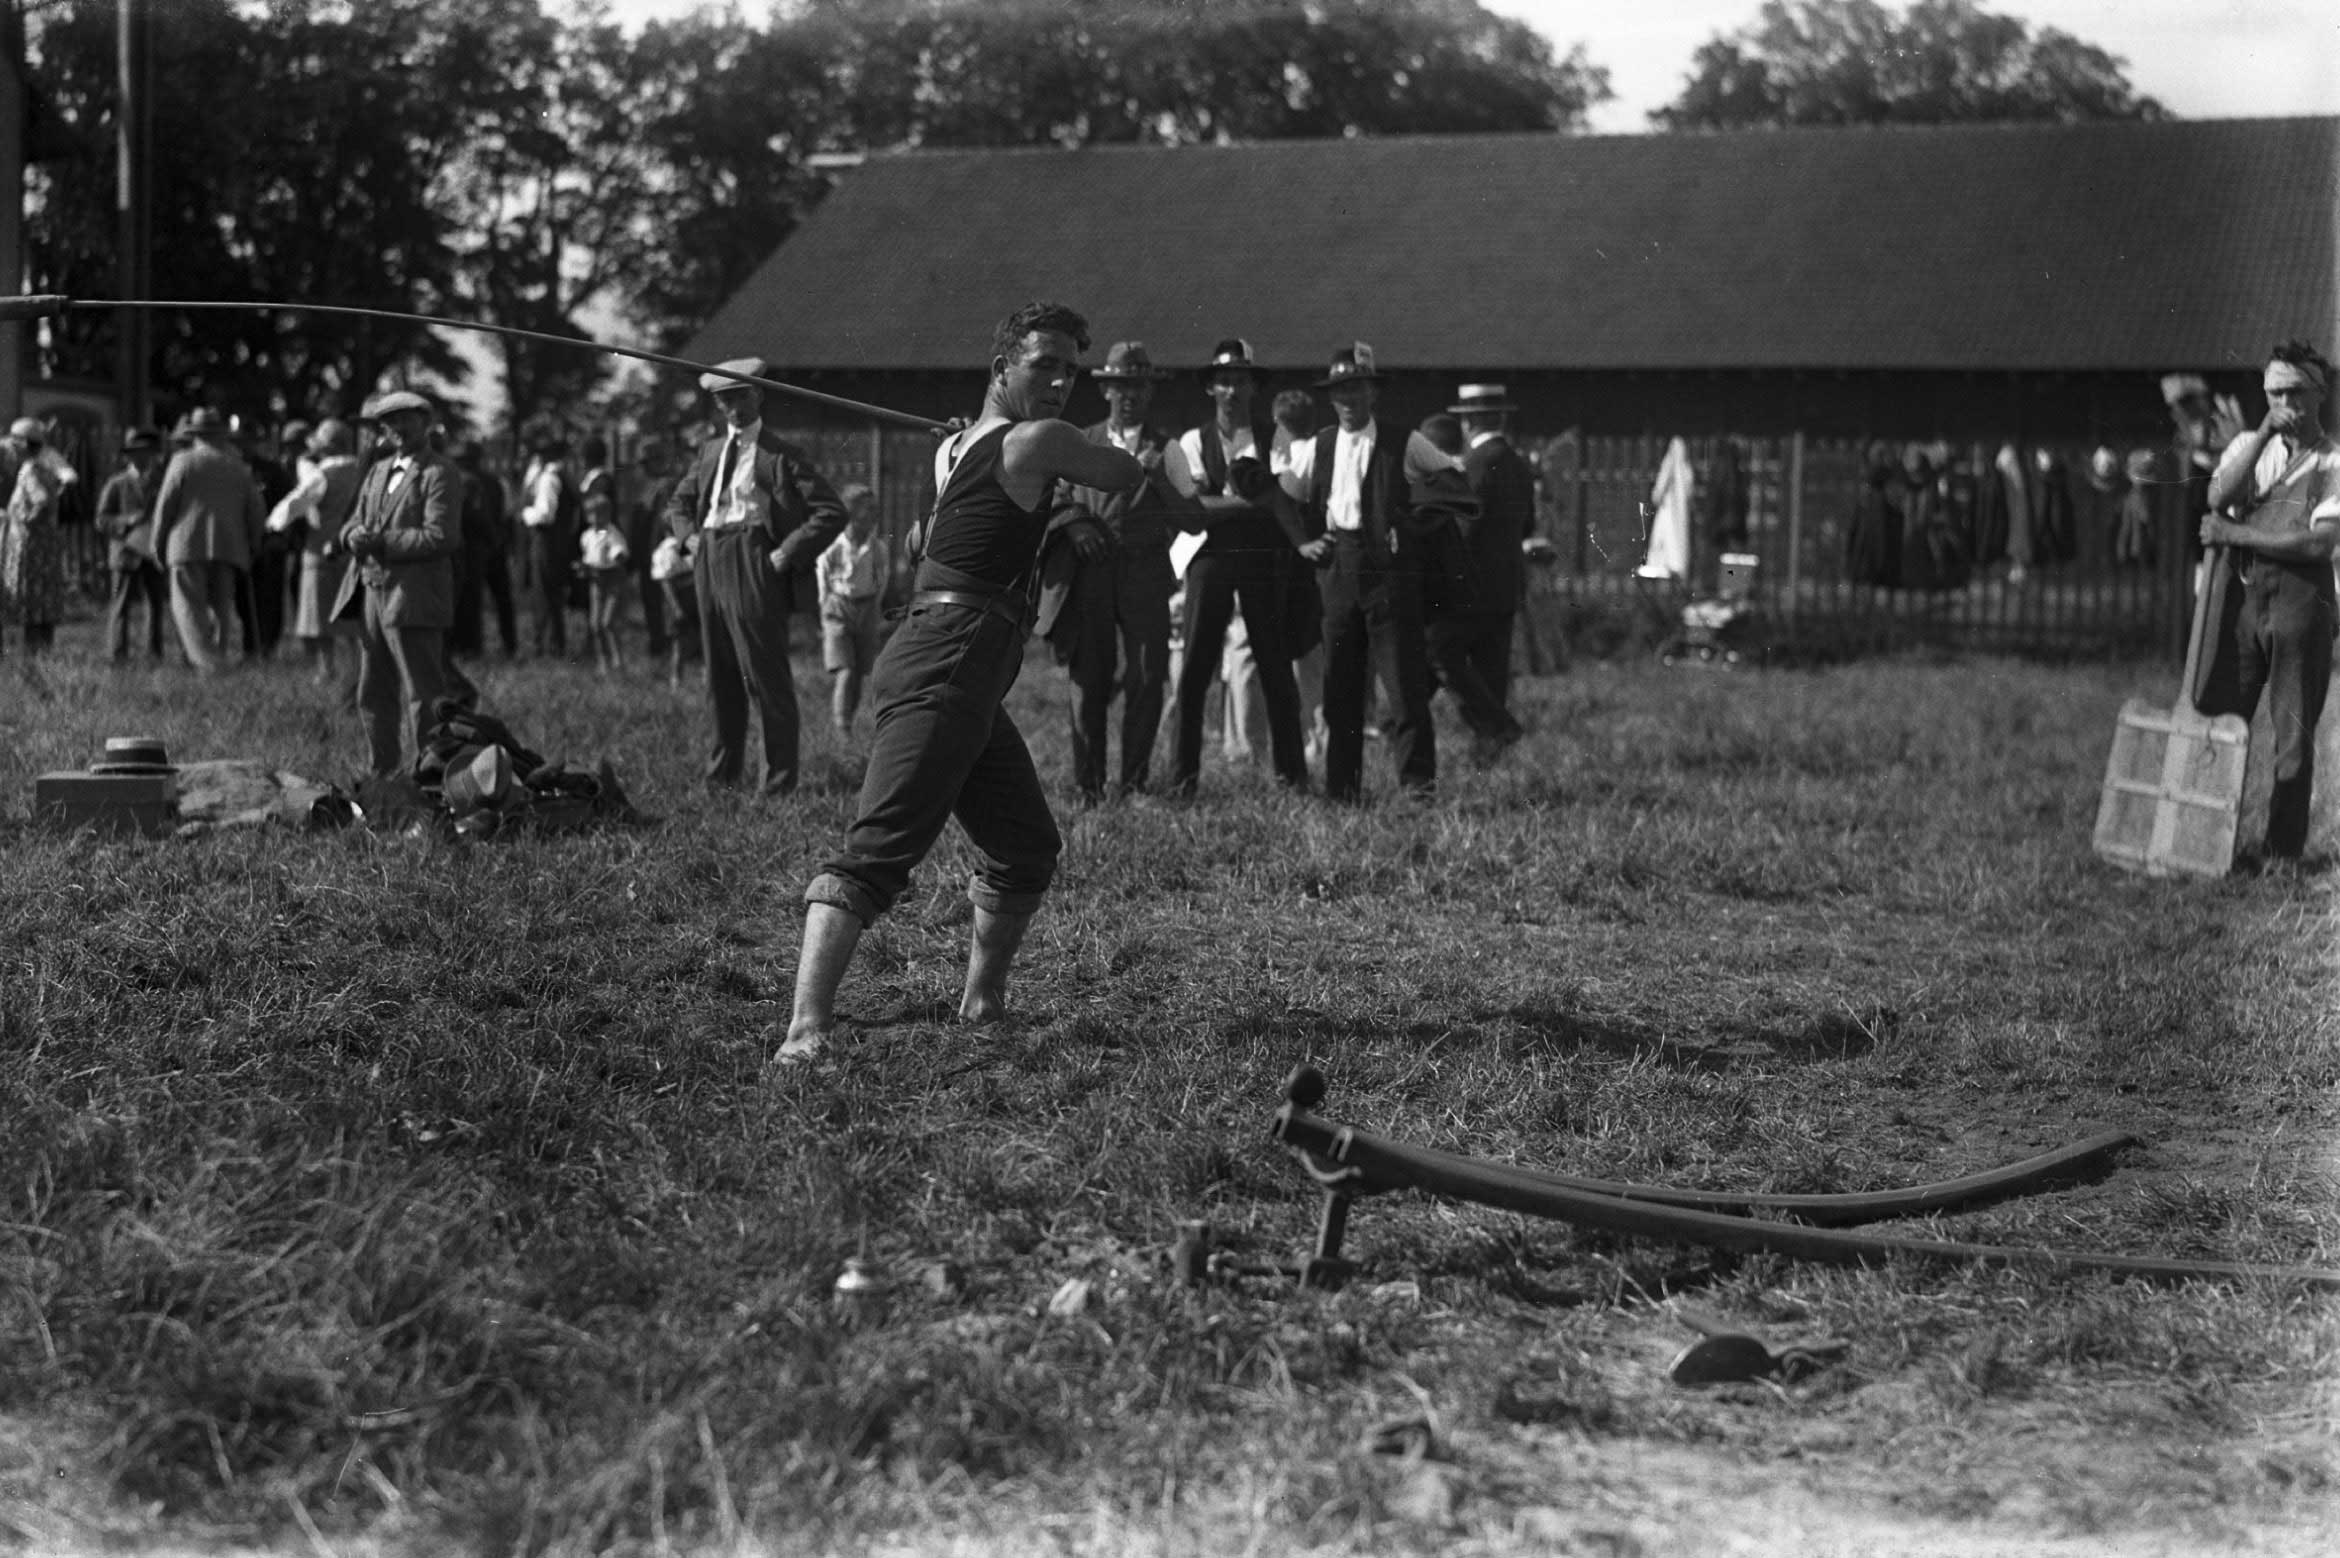 Fête fédérale de hornuss Thoune, 1930: joueur prêt à frapper (photo de Carl Jost) © Carl Jost/Staatsarchiv Bern